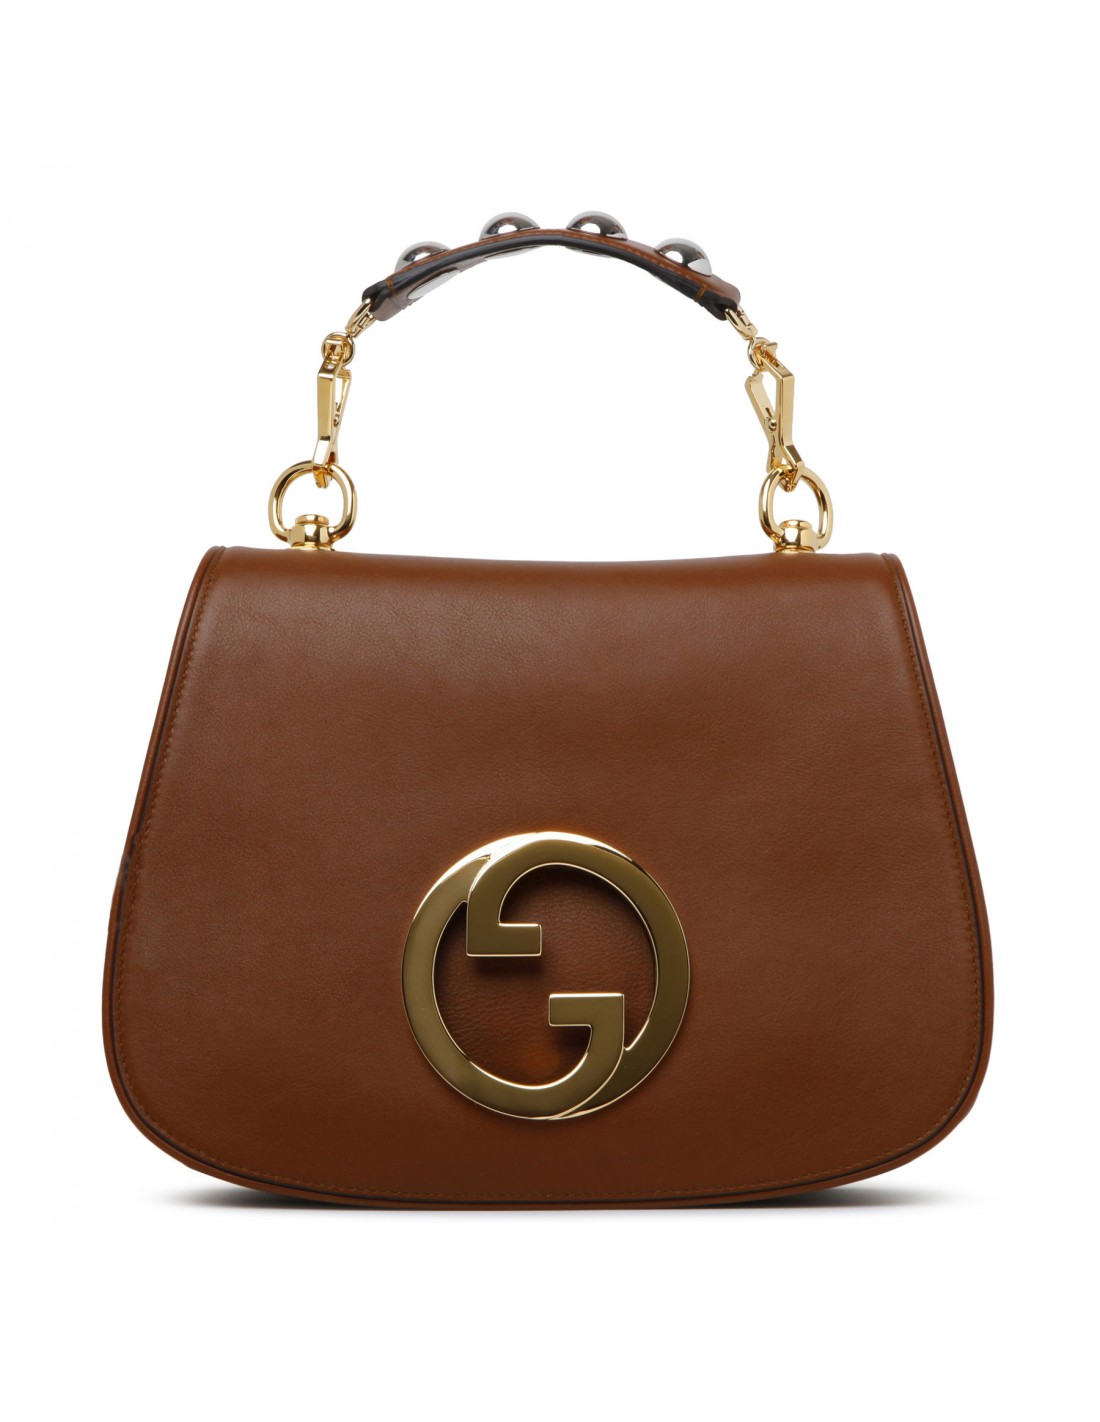 Gucci Blondie top handle bag in orange leather